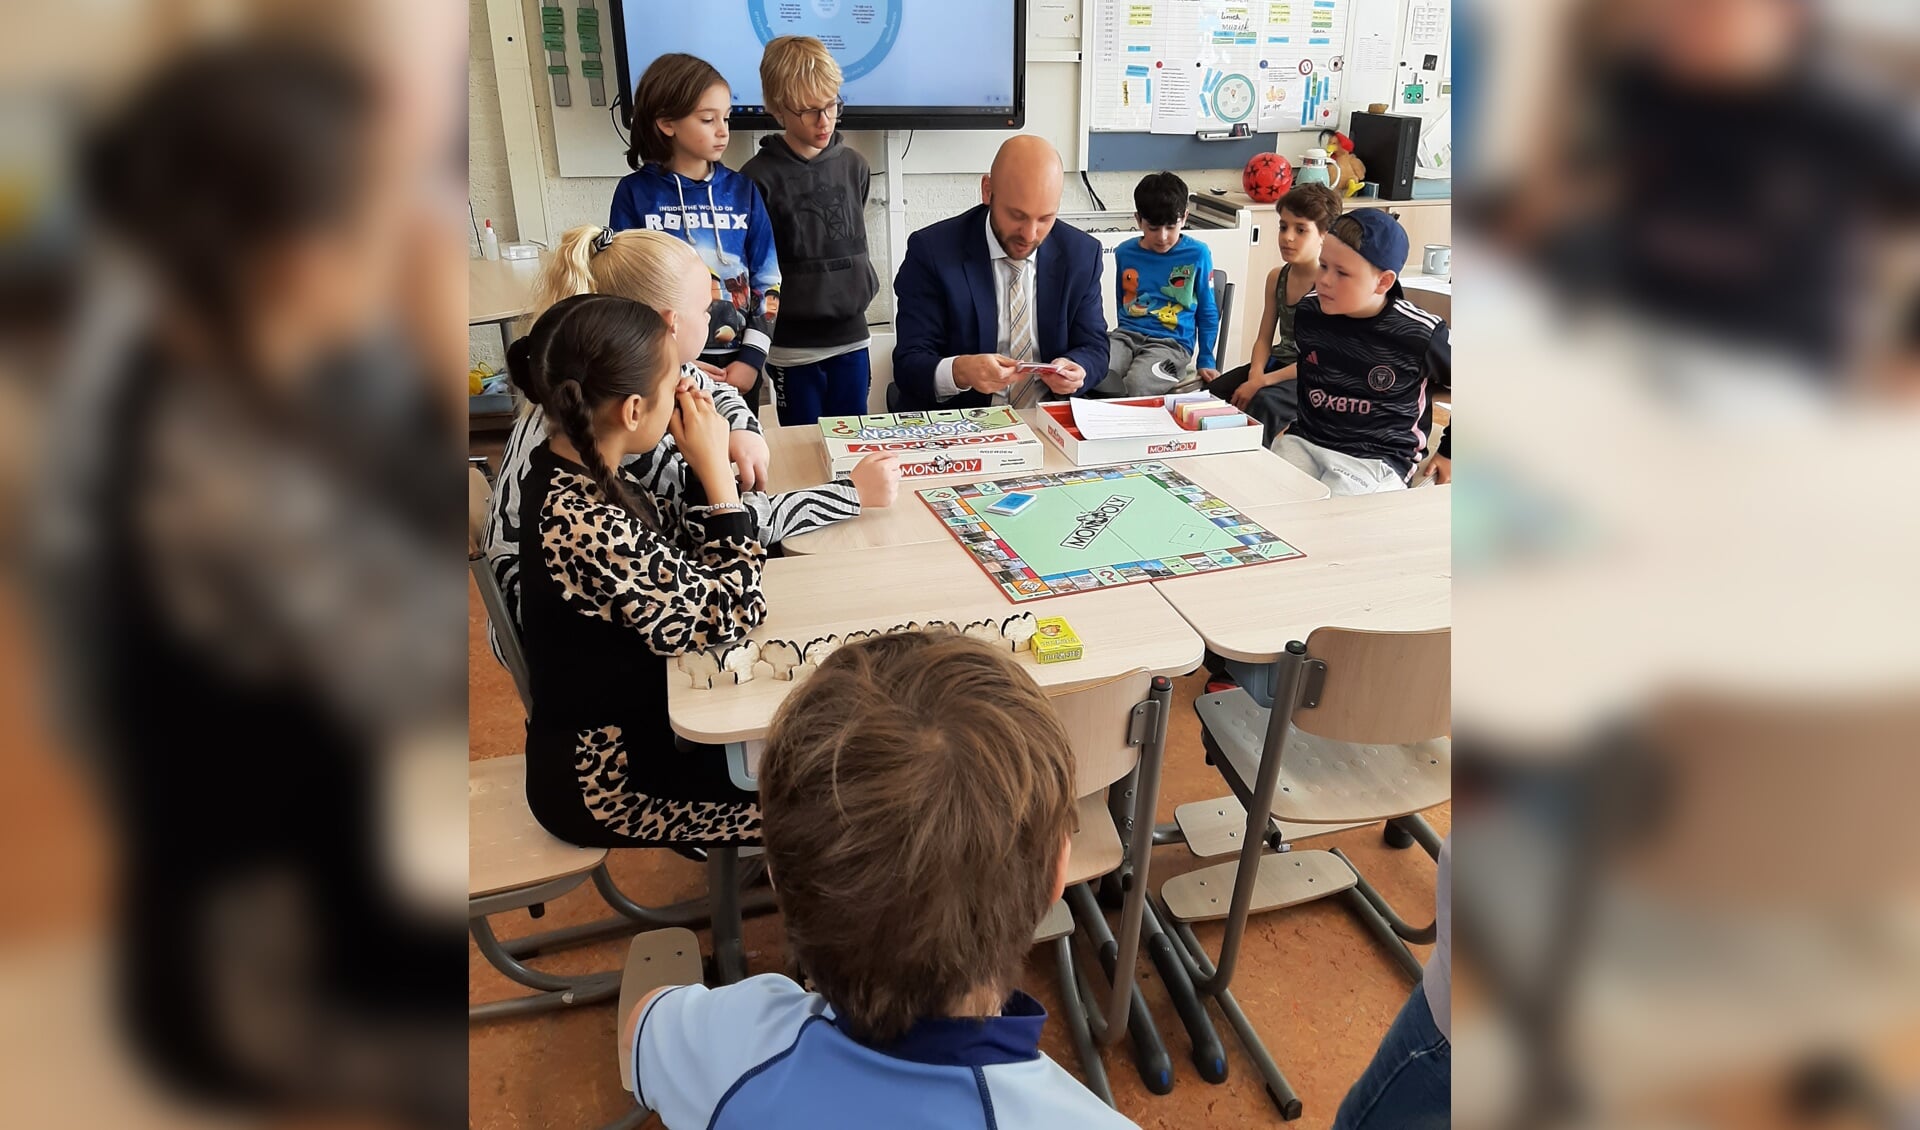 • Wethouder Jacques Rozendaal kwam langs om de Woerdense versie van het Monopoly-spel te komen bekijken.